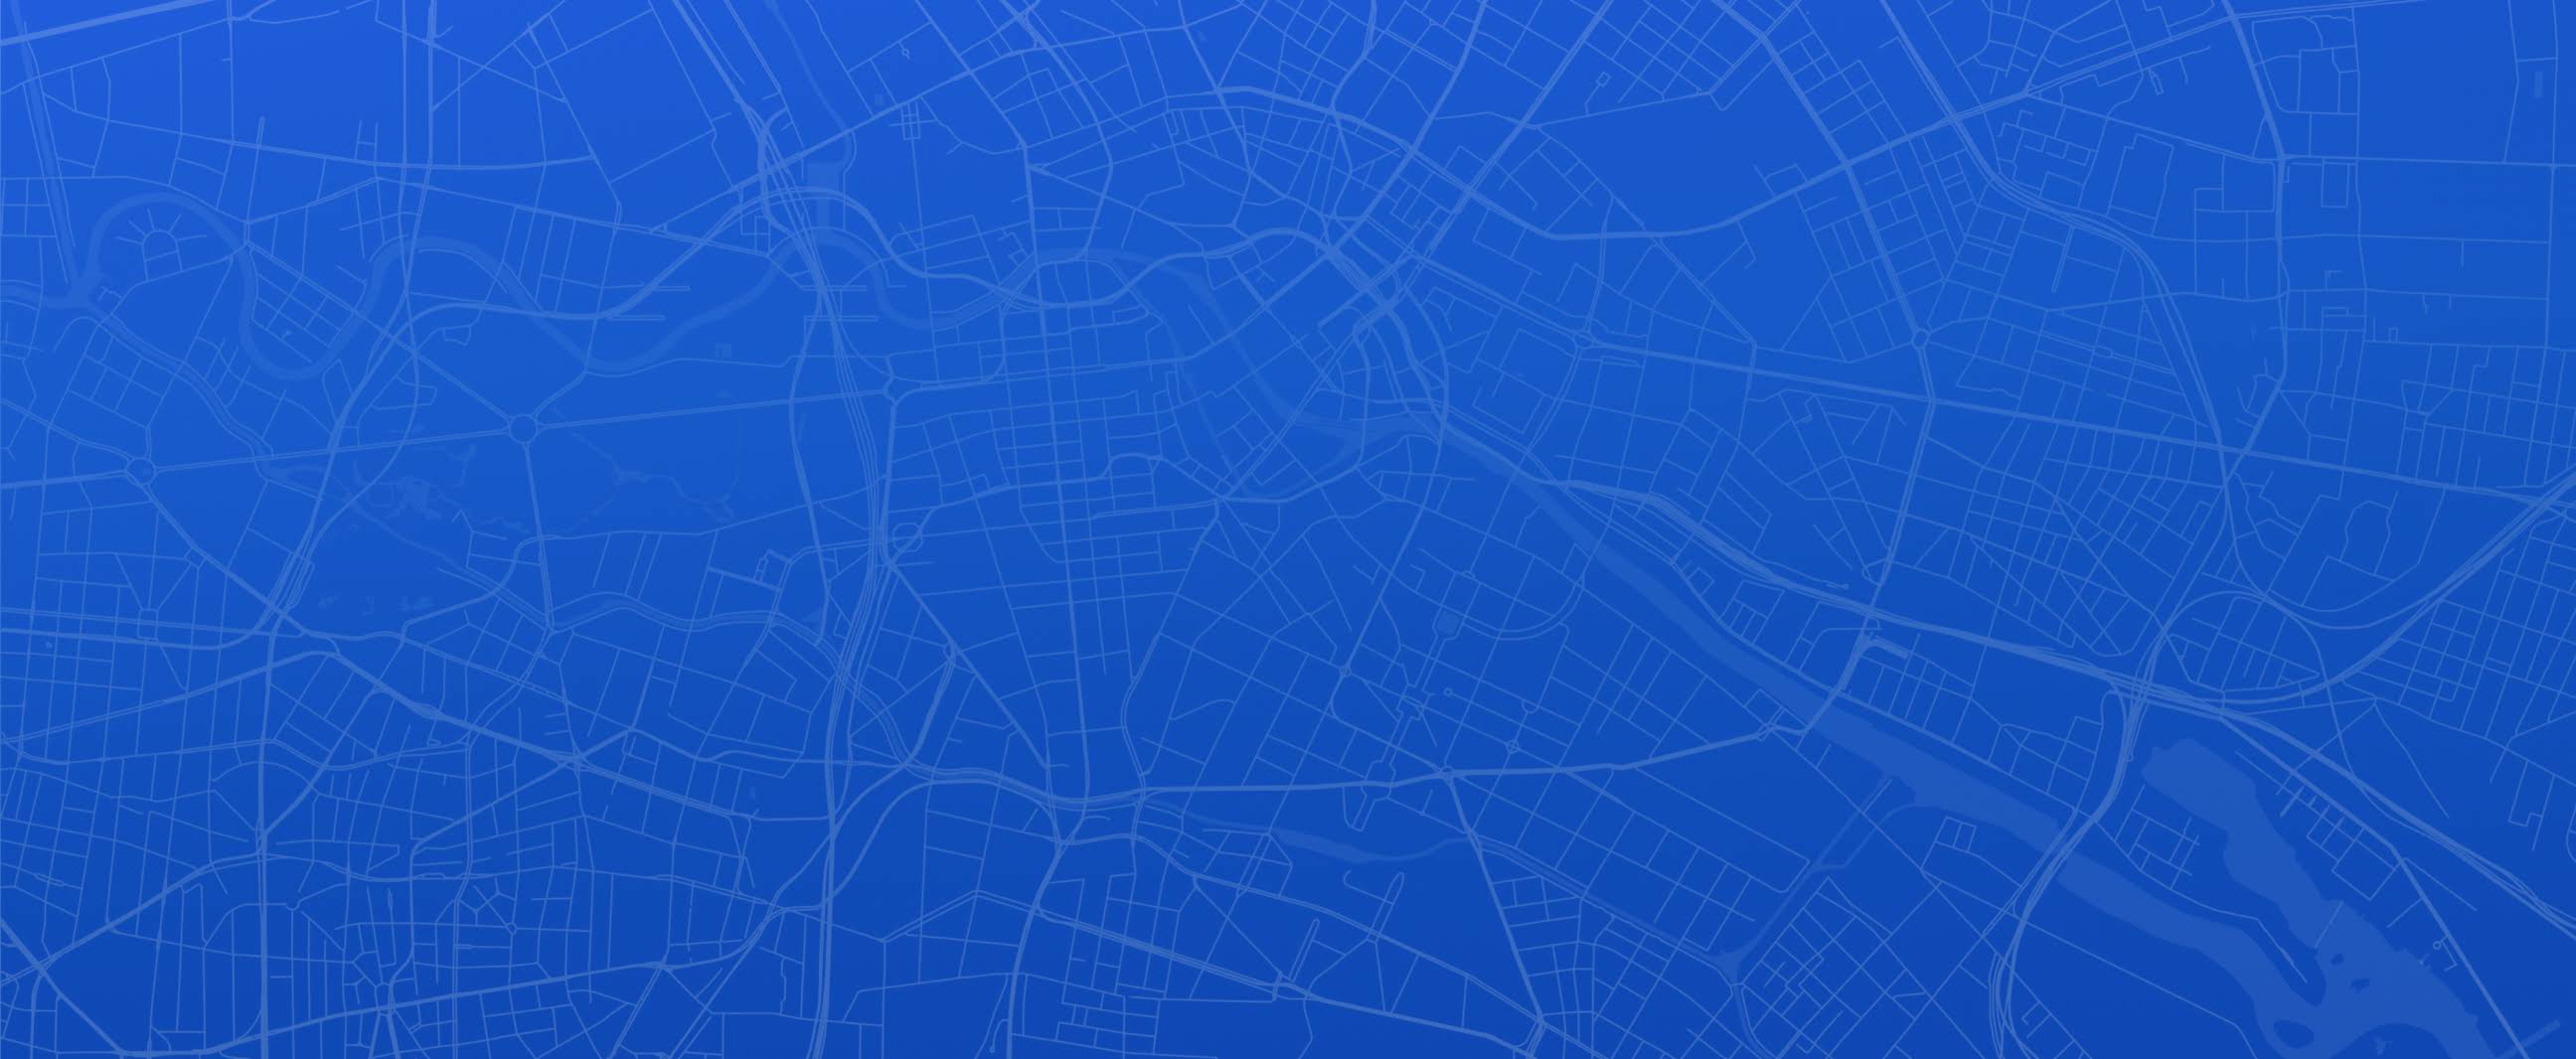 Mapa en blanco y azul de una ciudad